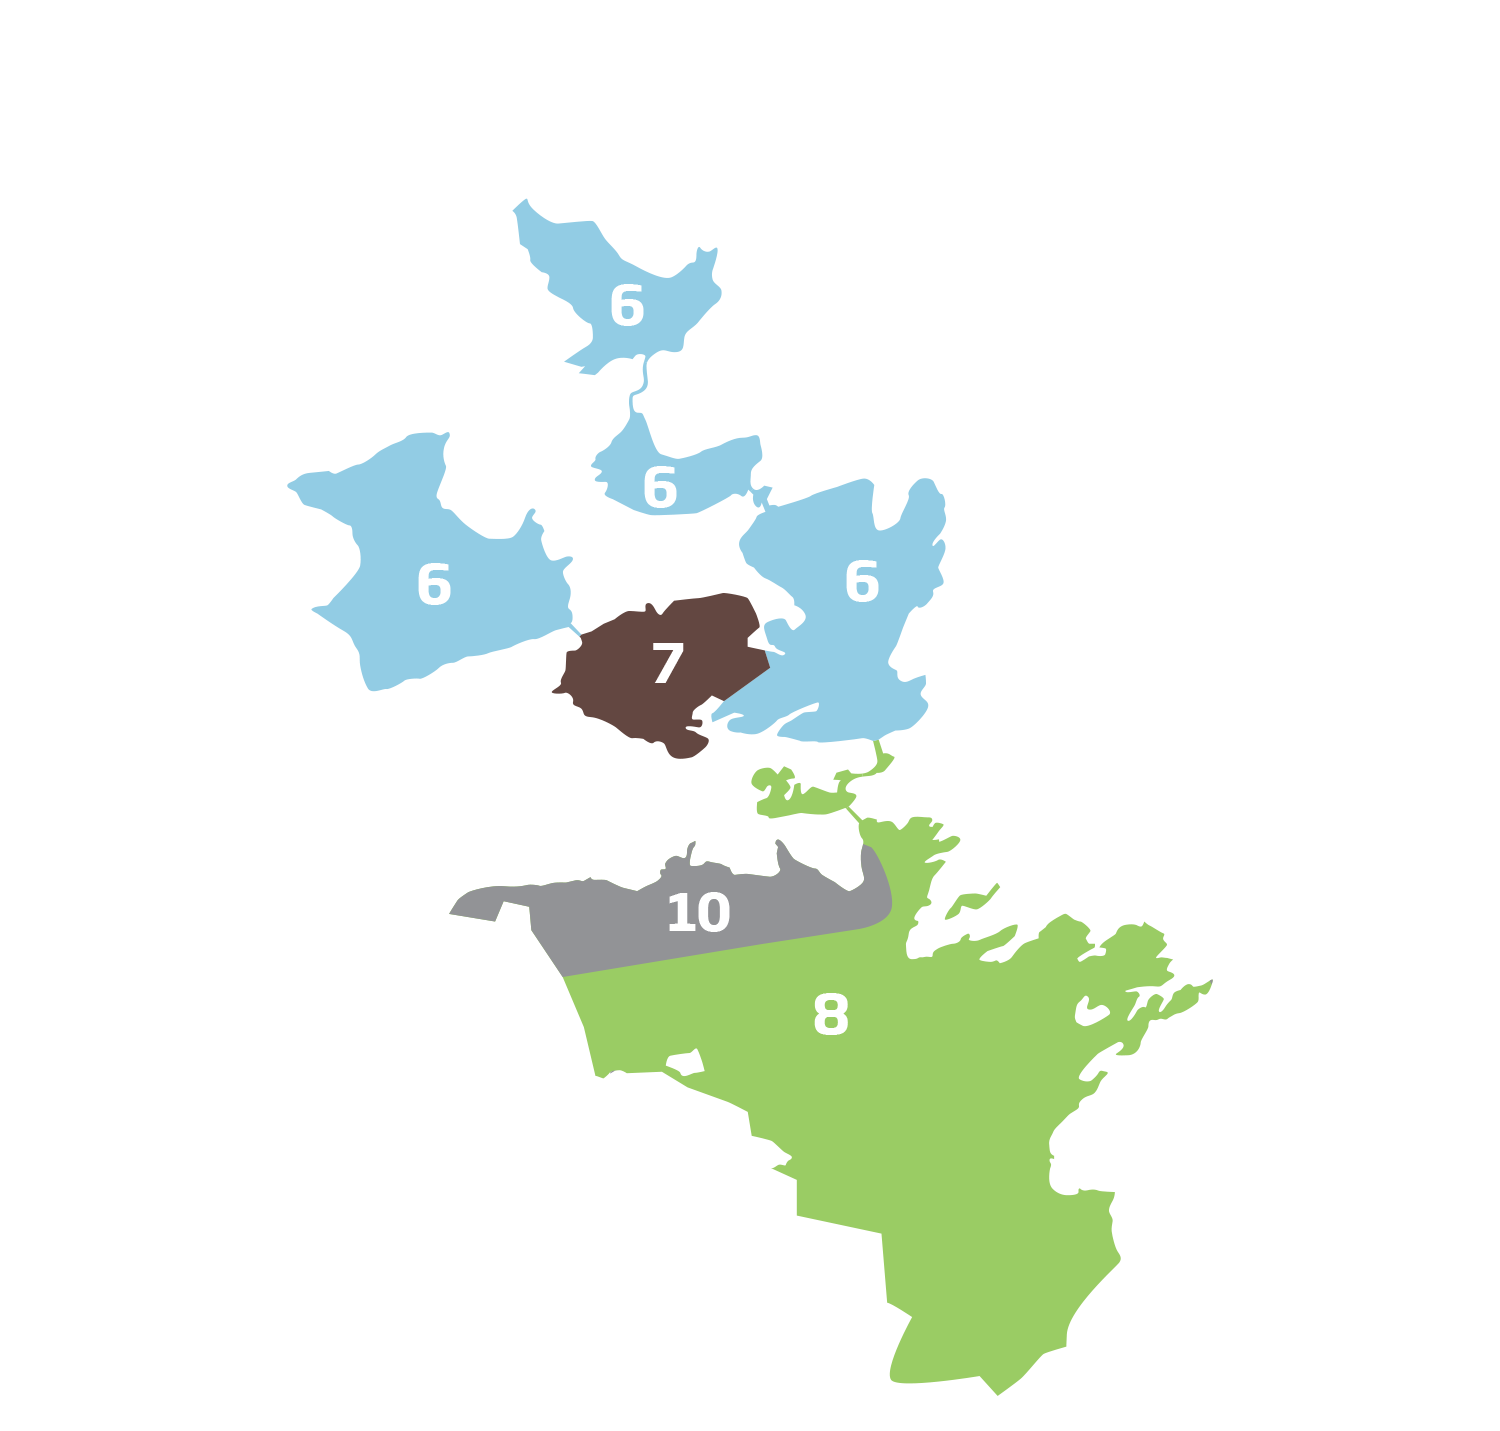 Herøy kommune